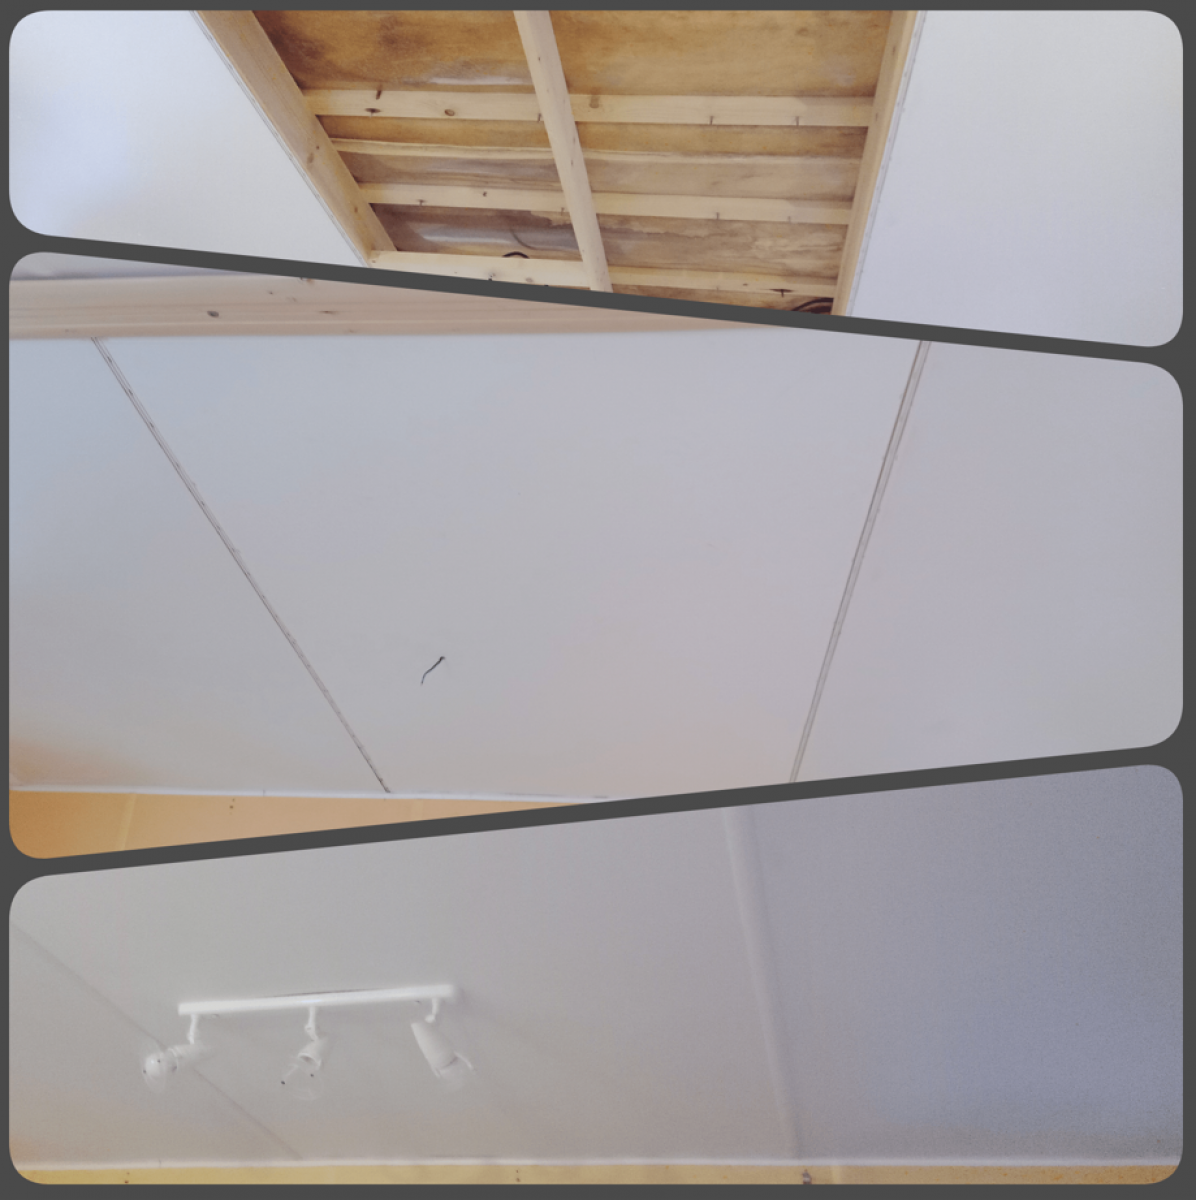 Remplacement plafond mobile home suite à un infiltration à Parentis en Born, Landes